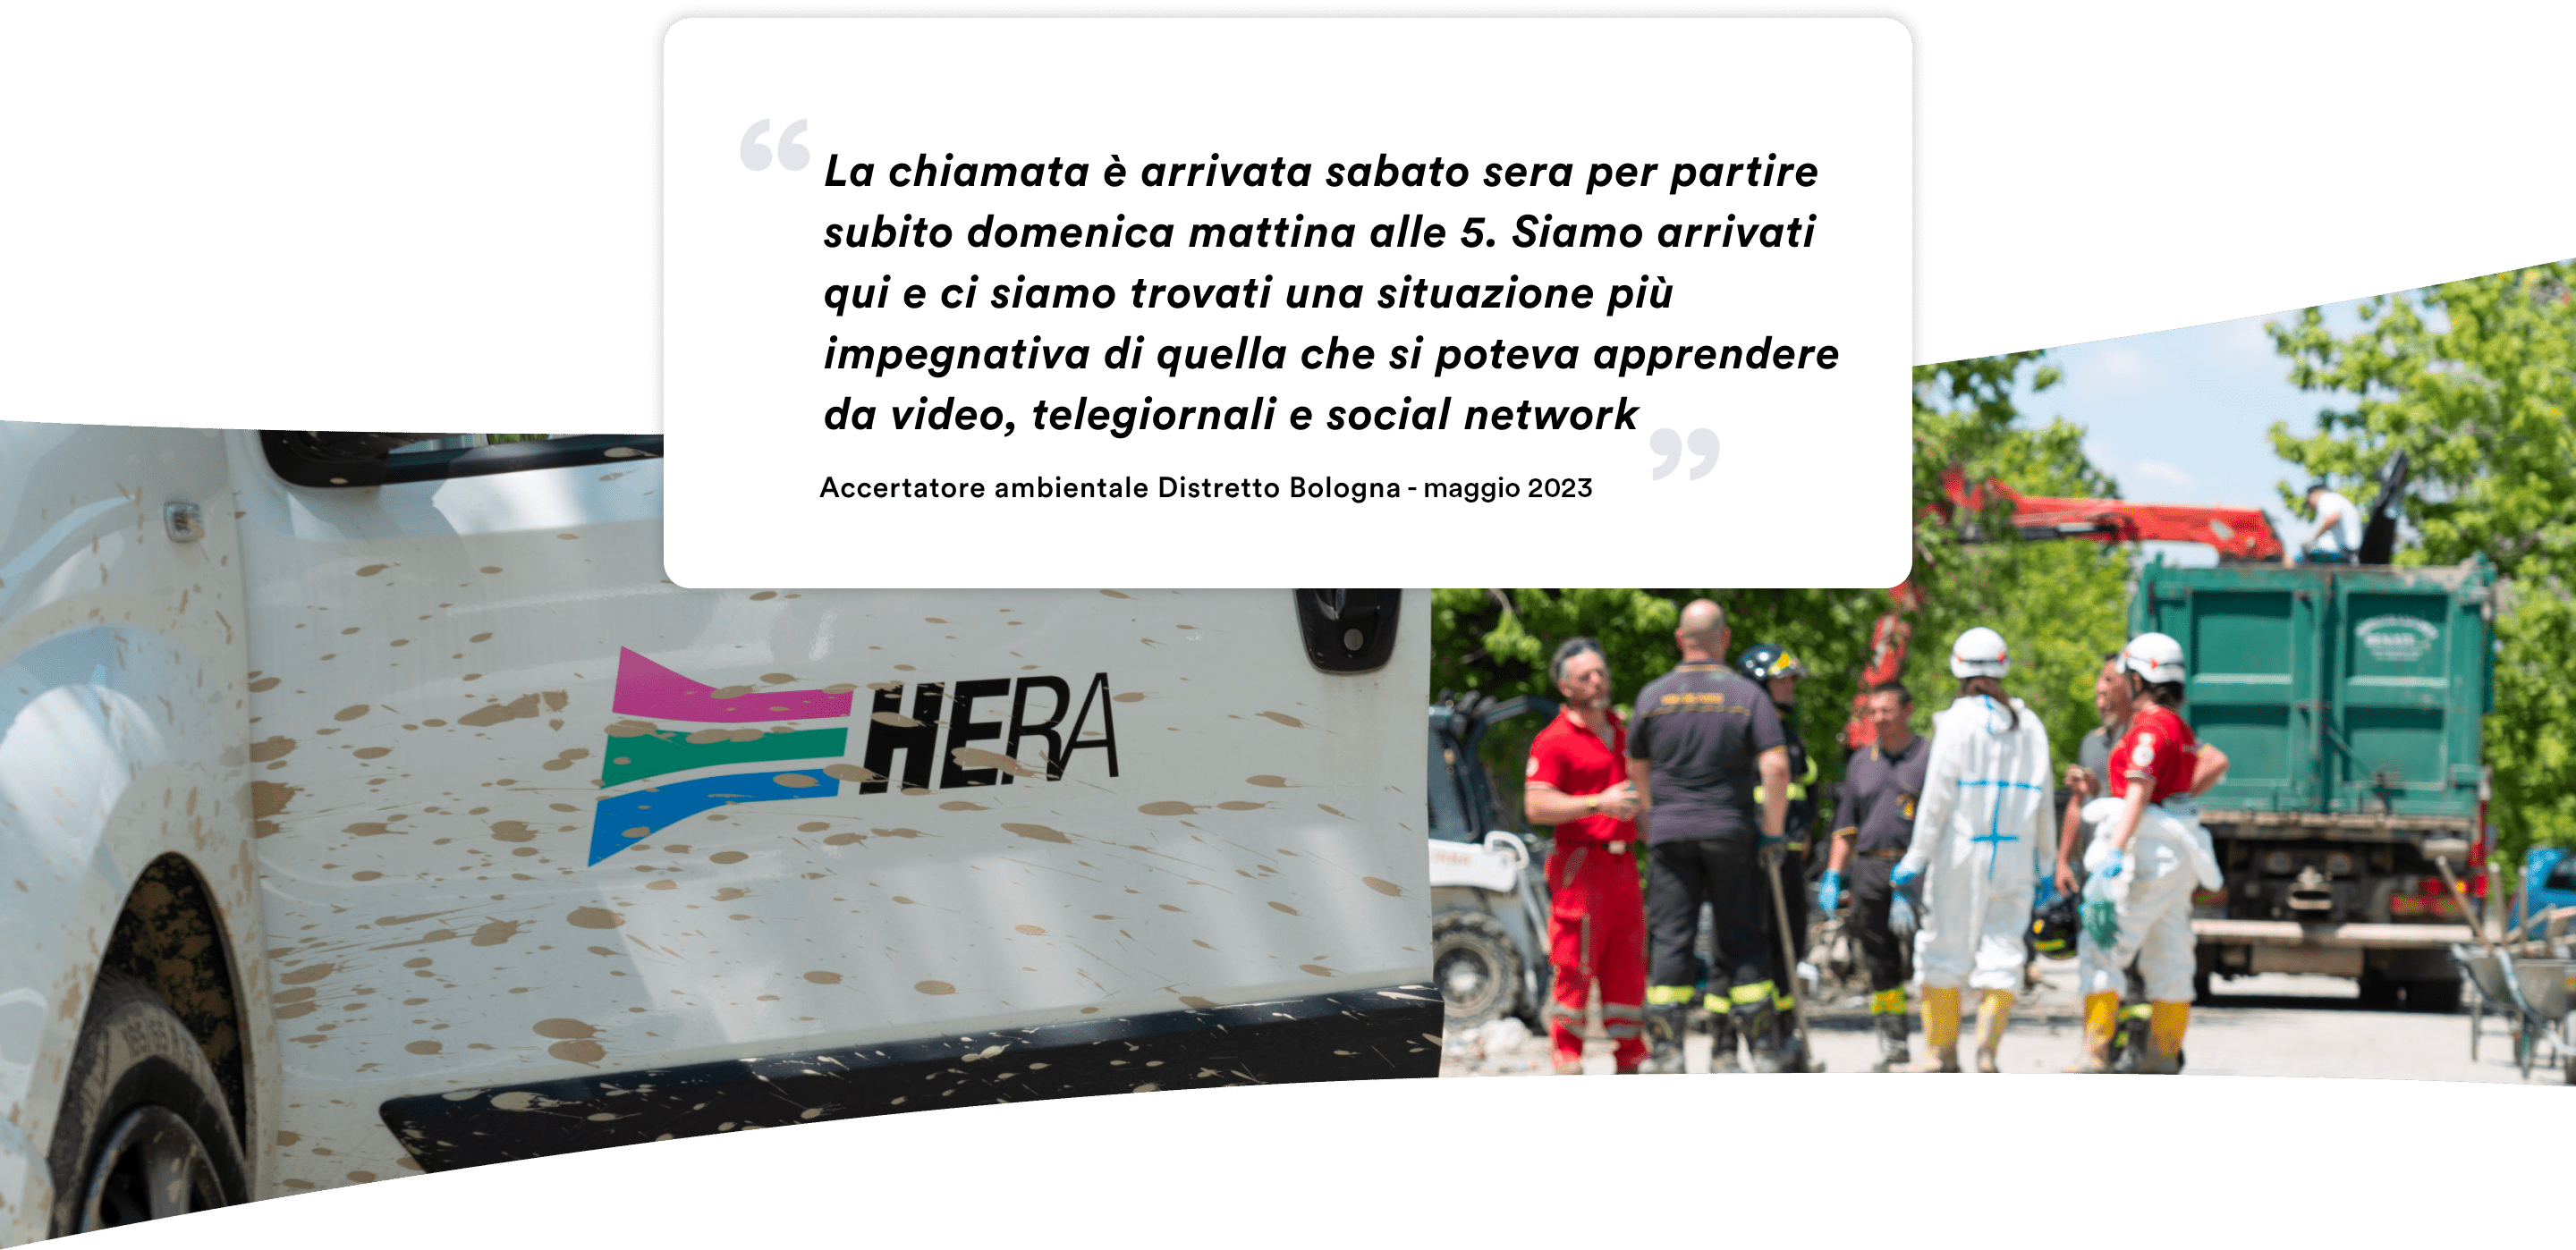 Accertatore ambientale Distretto Bologna dichiara: 